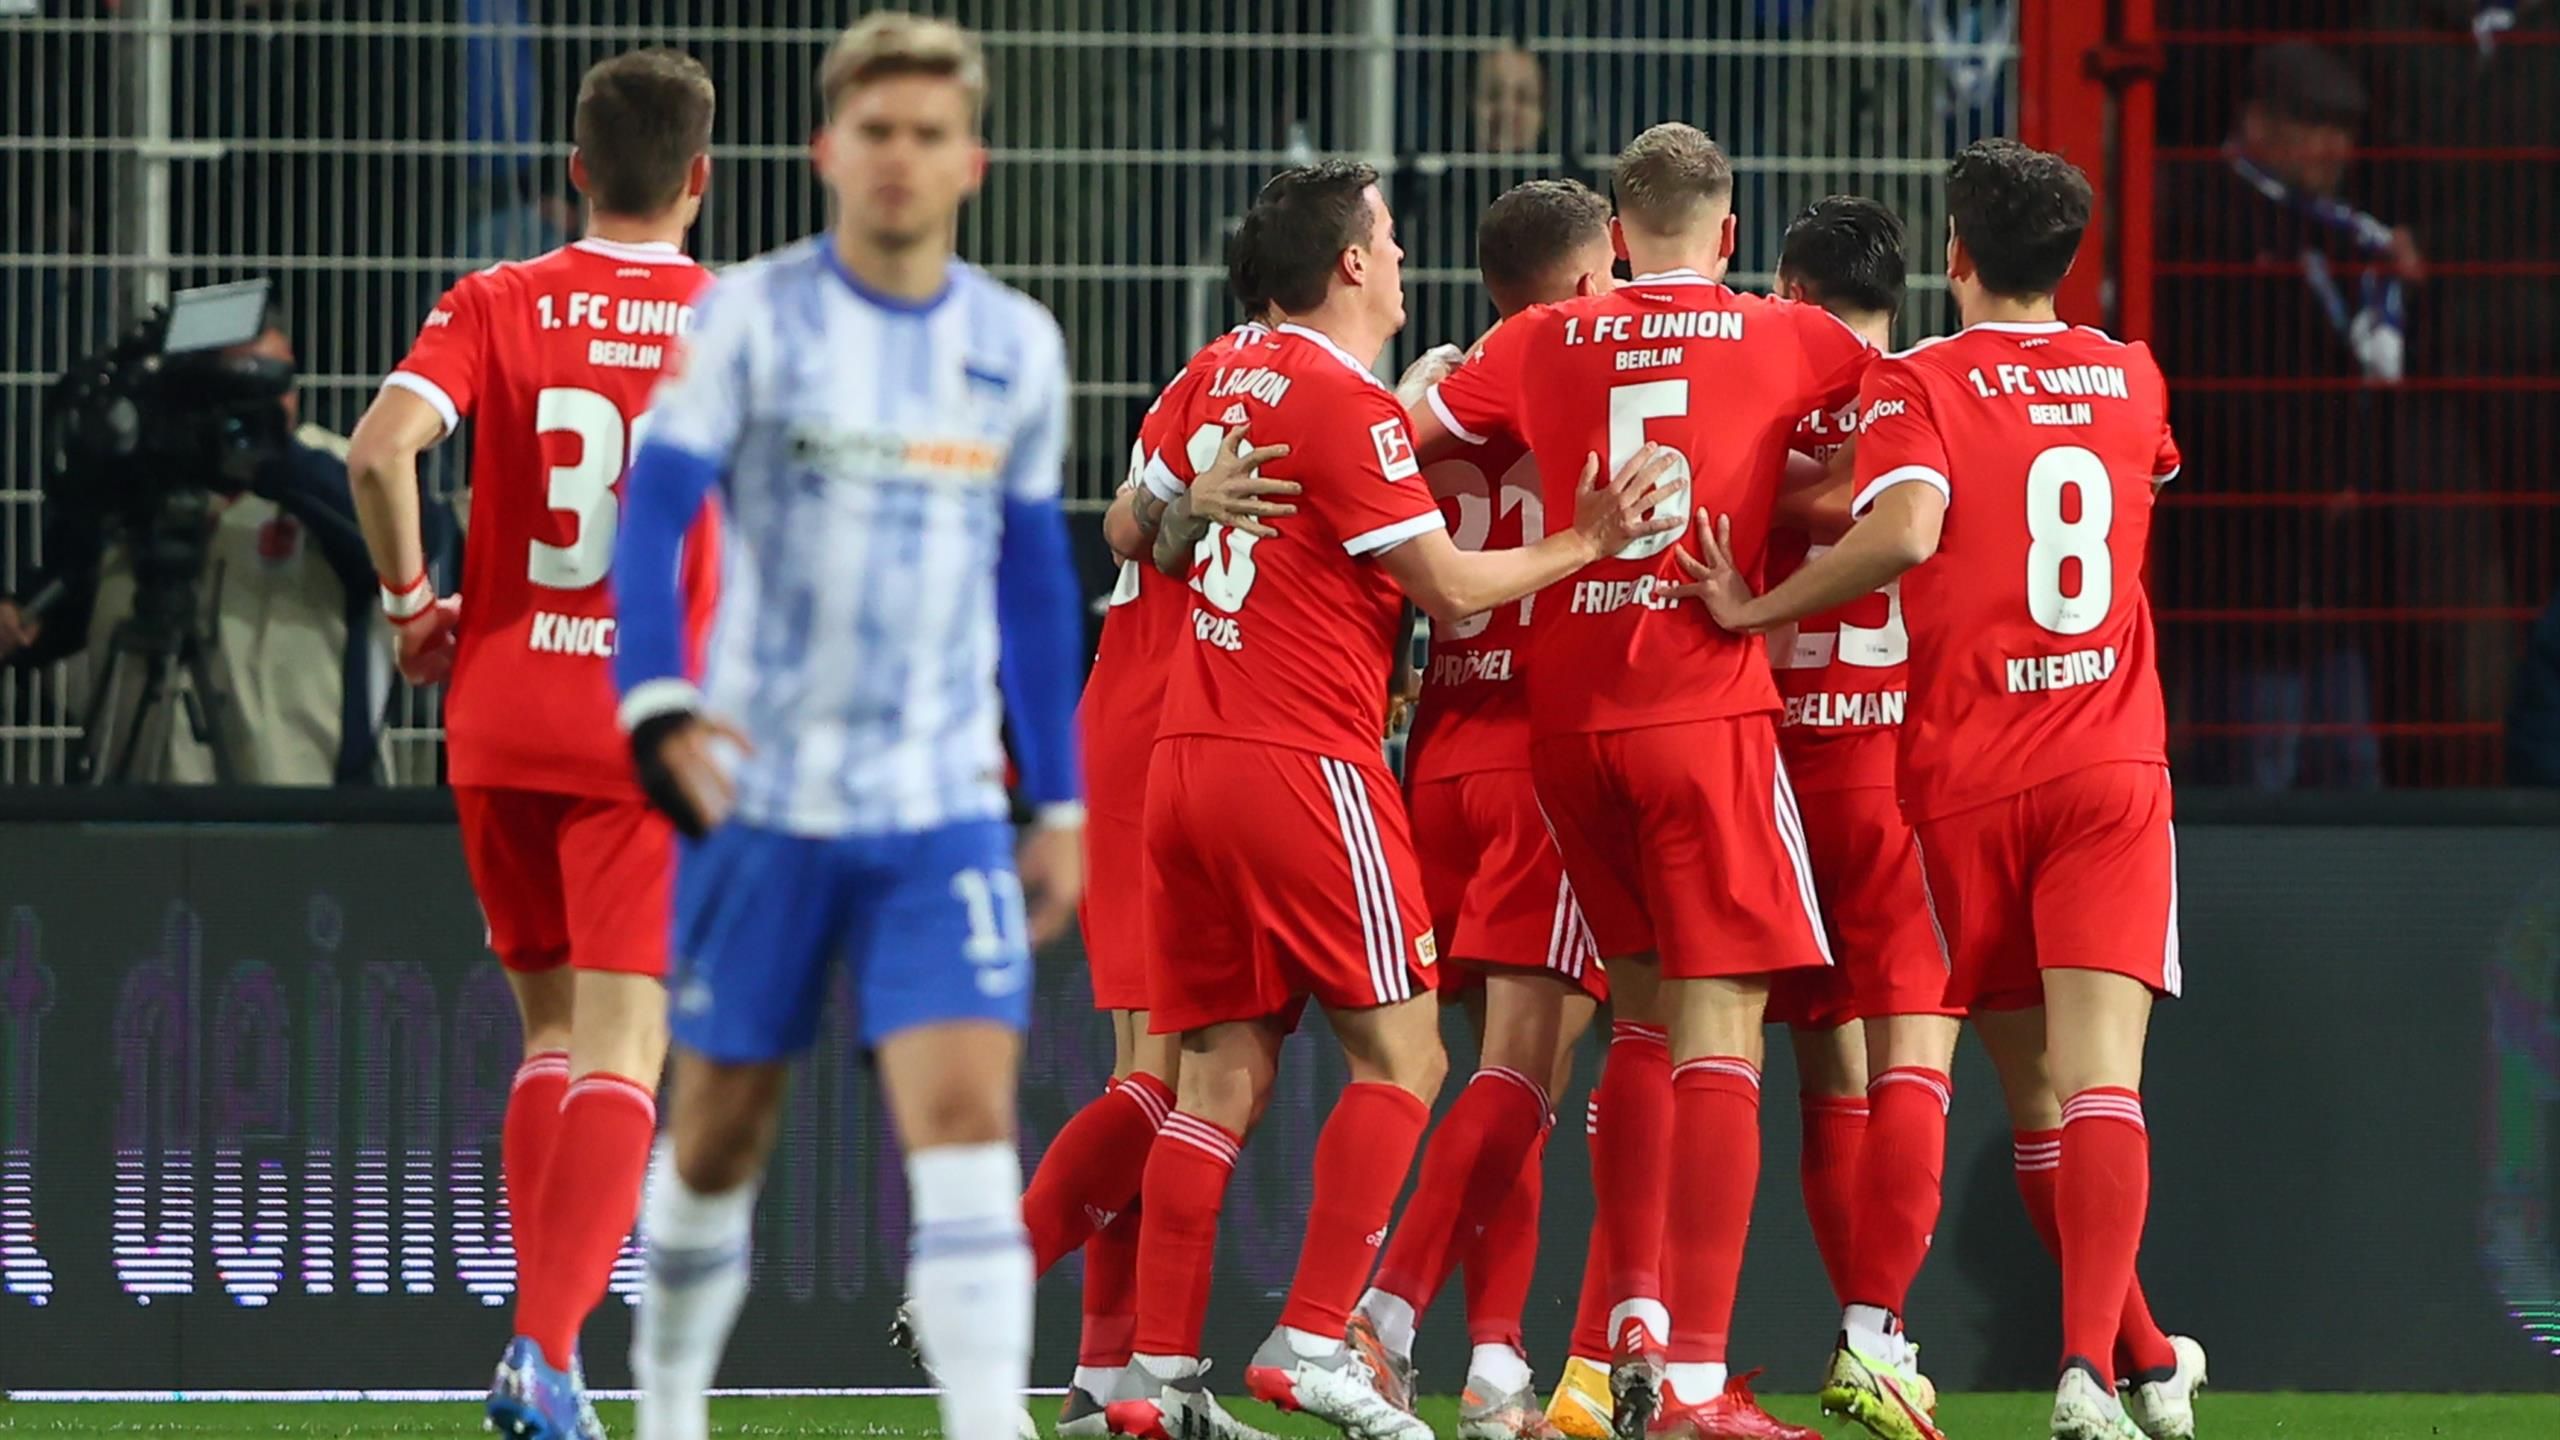 Union Berlin zwingt Hertha BSC im Berlin-Derby in die Knie - Awoniyi und Trimmel treffen